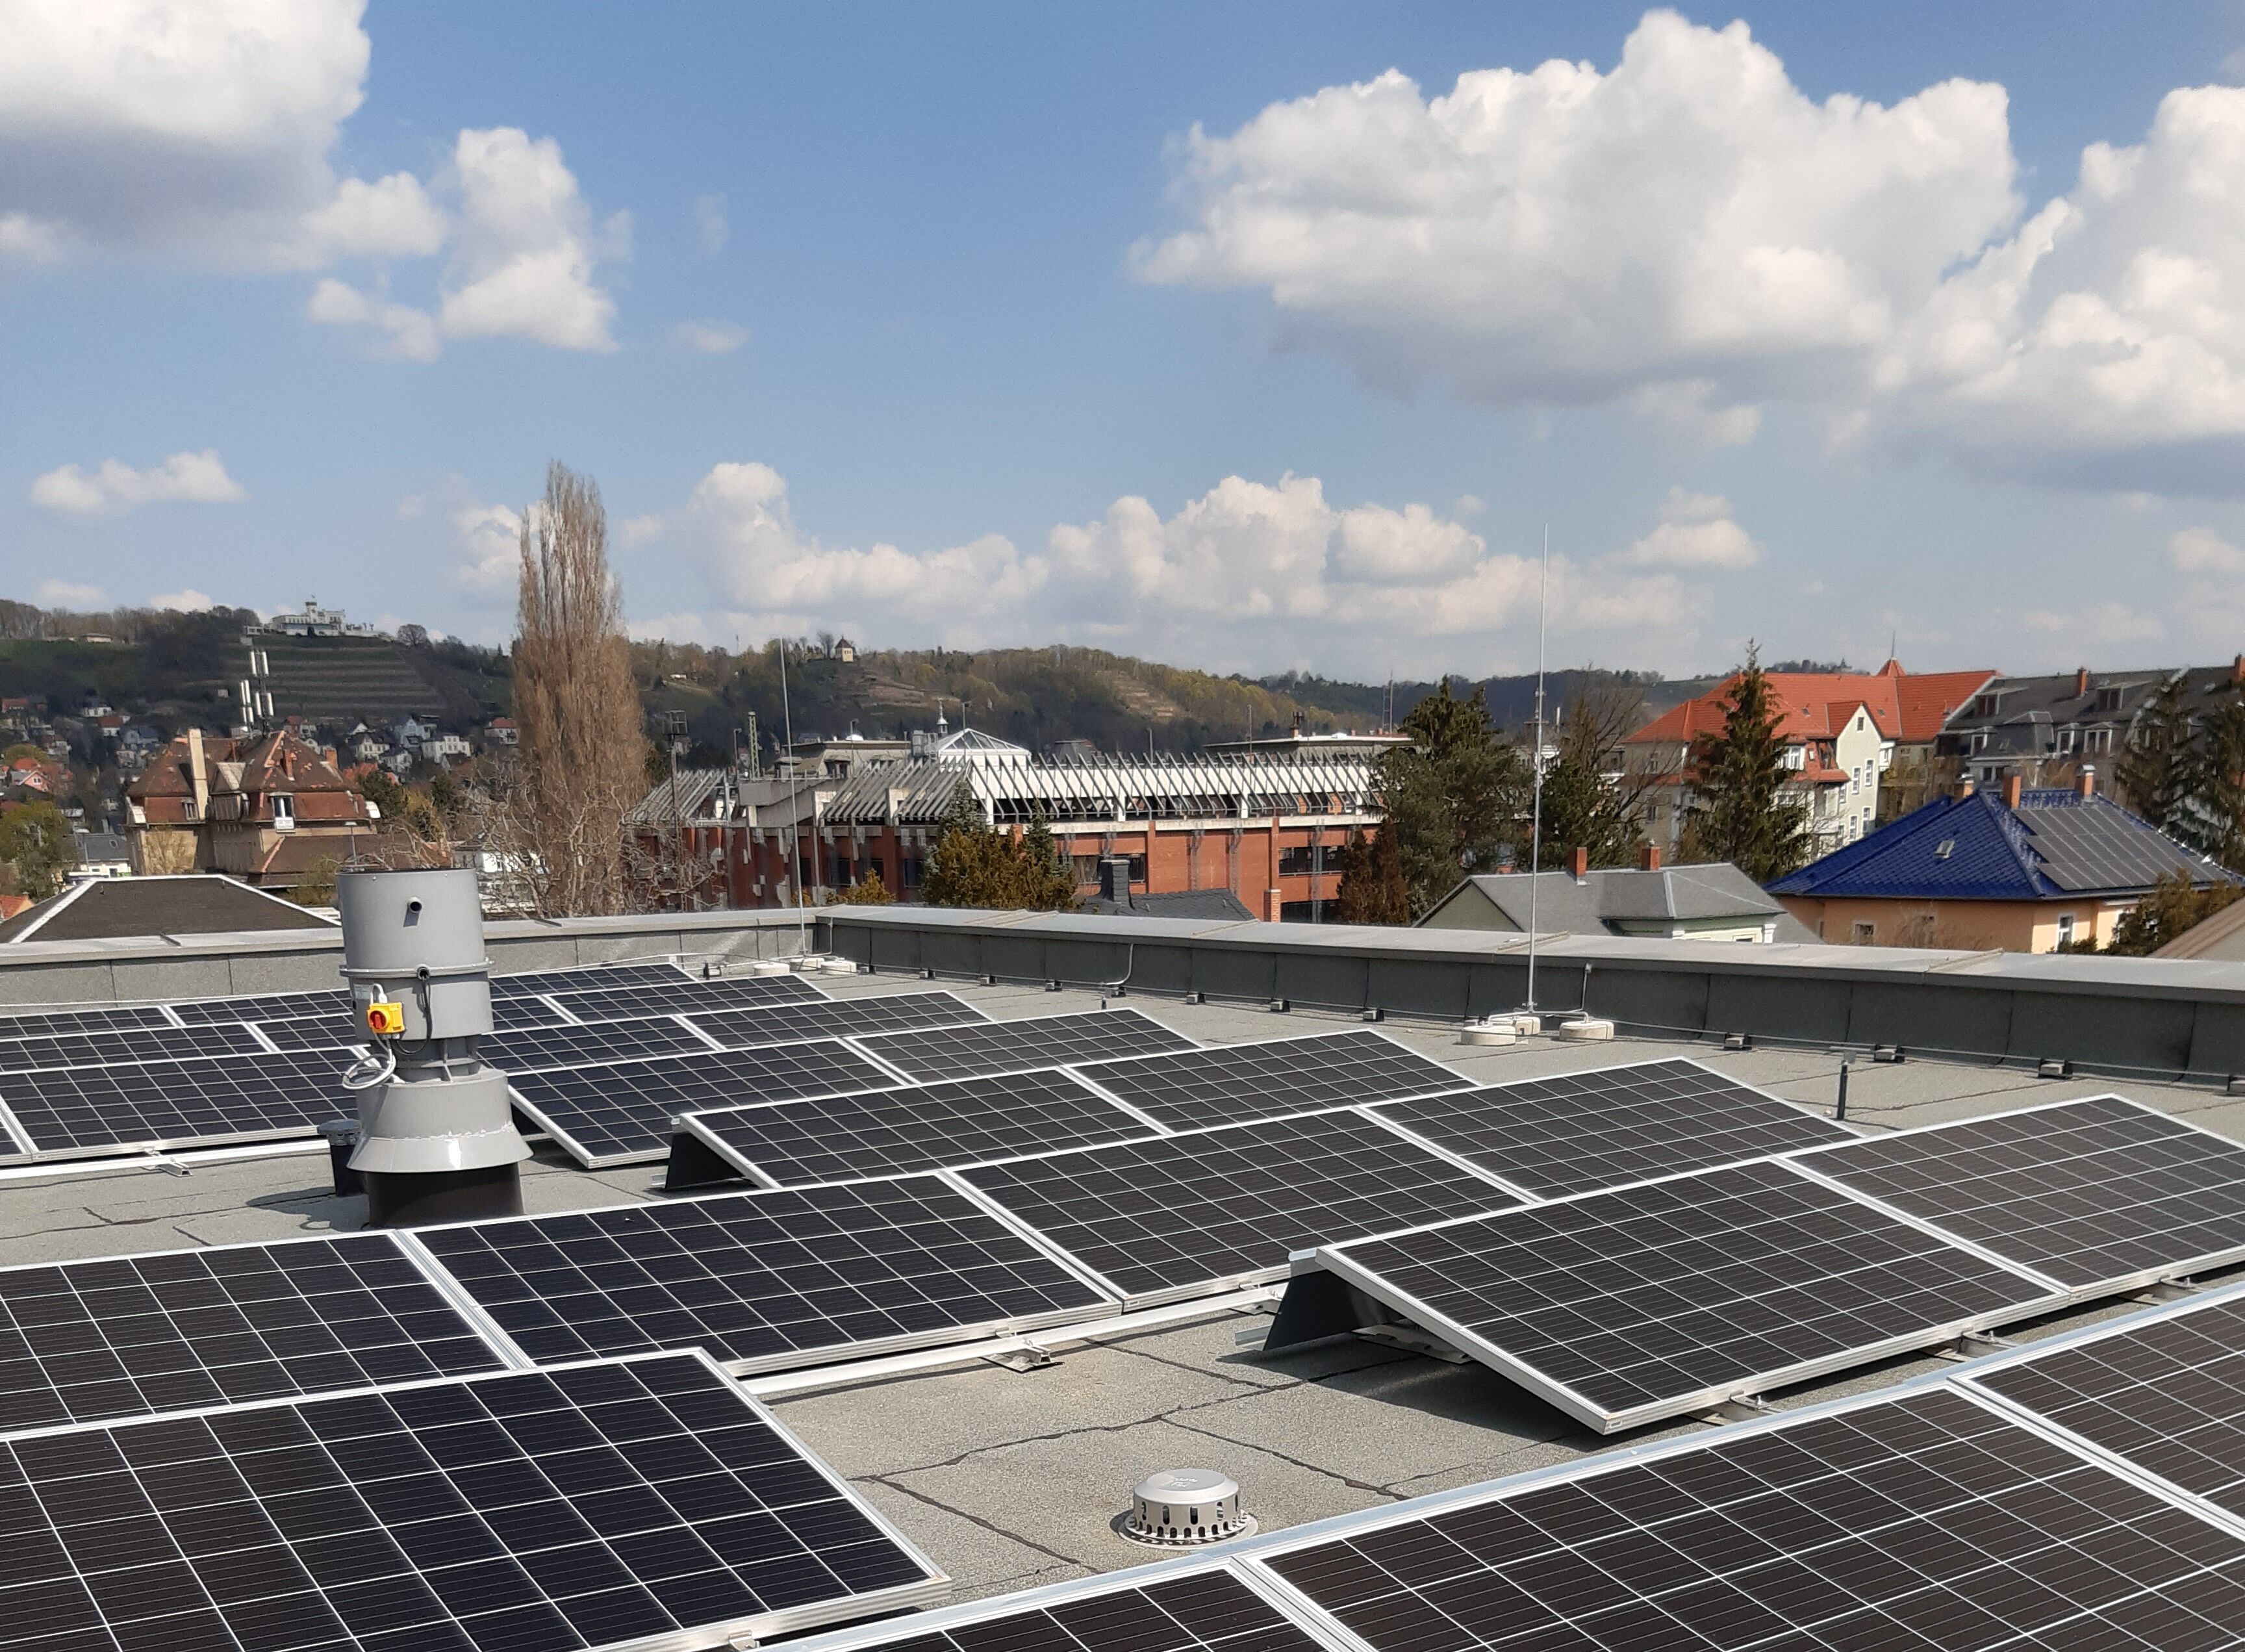 Solarmodule auf einem Dach, im Hintergrund Gebäude